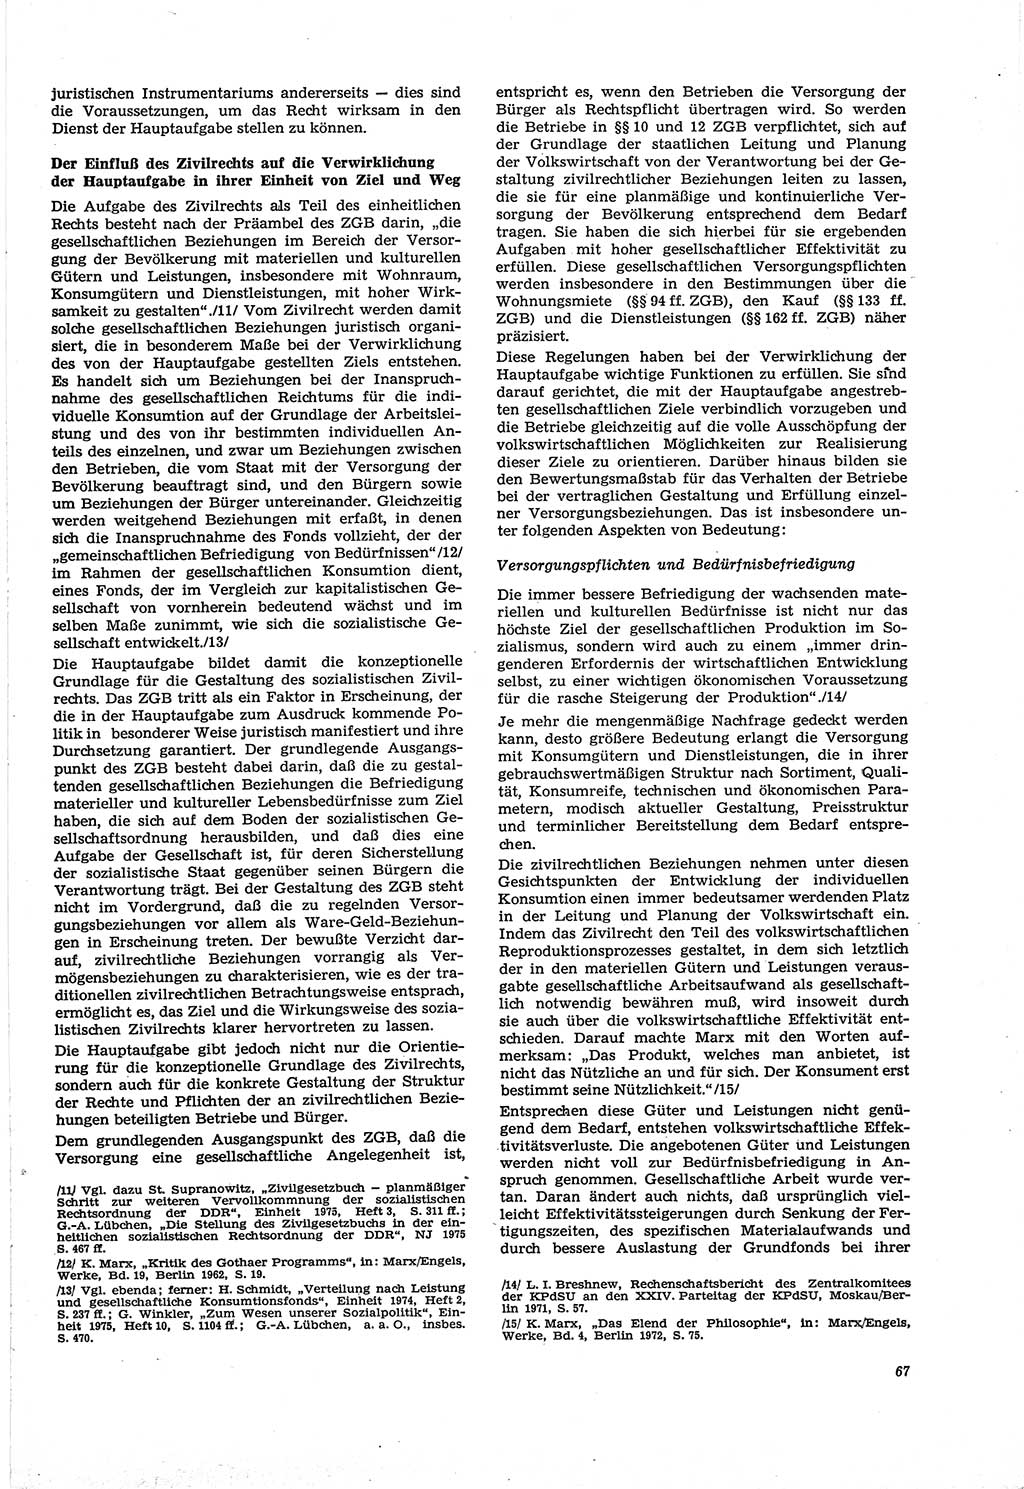 Neue Justiz (NJ), Zeitschrift für Recht und Rechtswissenschaft [Deutsche Demokratische Republik (DDR)], 30. Jahrgang 1976, Seite 67 (NJ DDR 1976, S. 67)